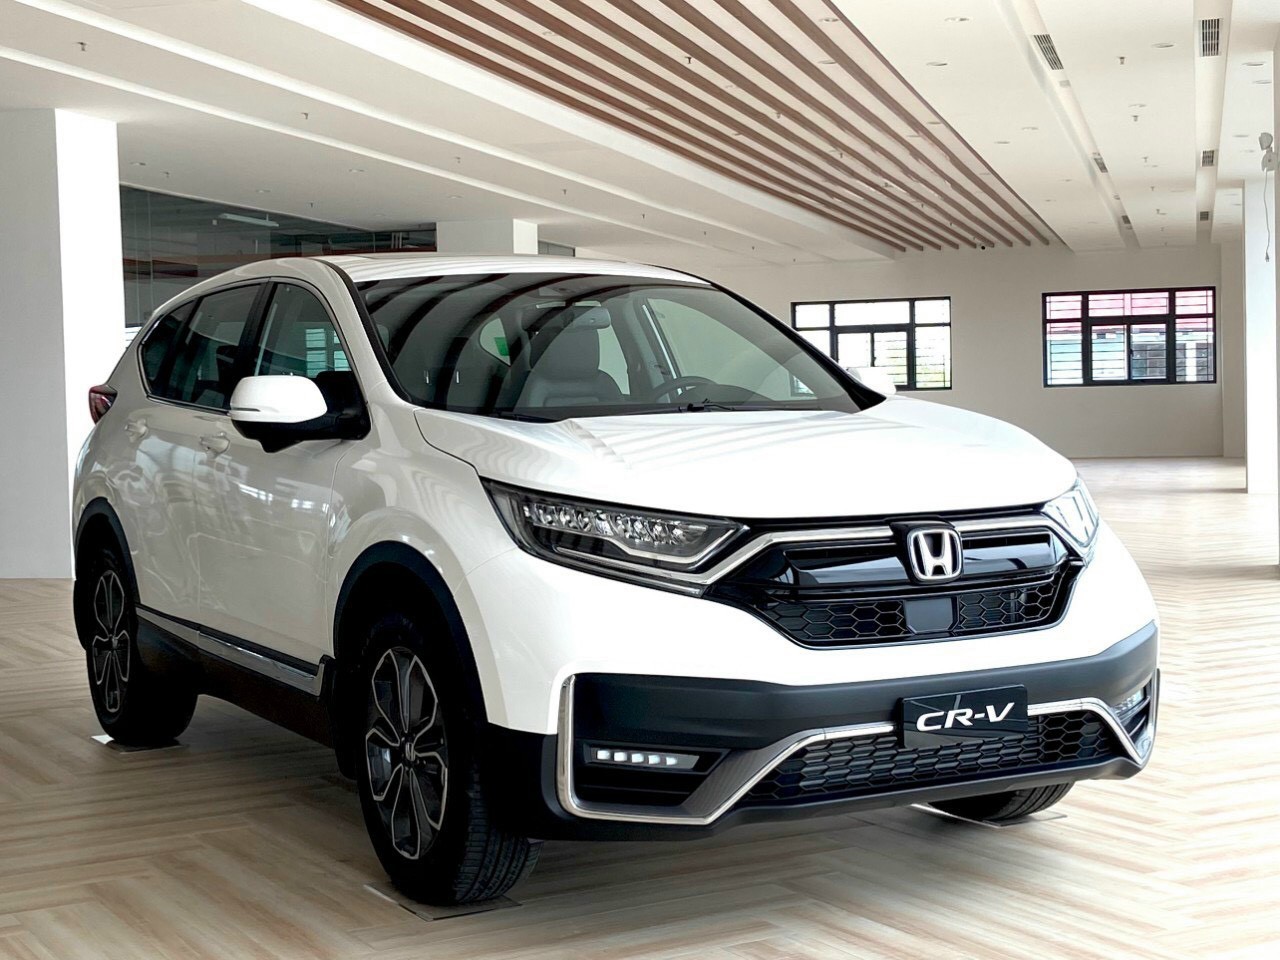 Giá xe tháng 6: Honda CR-V tiếp tục ưu đãi lớn lên đến hơn 113 triệu đồng